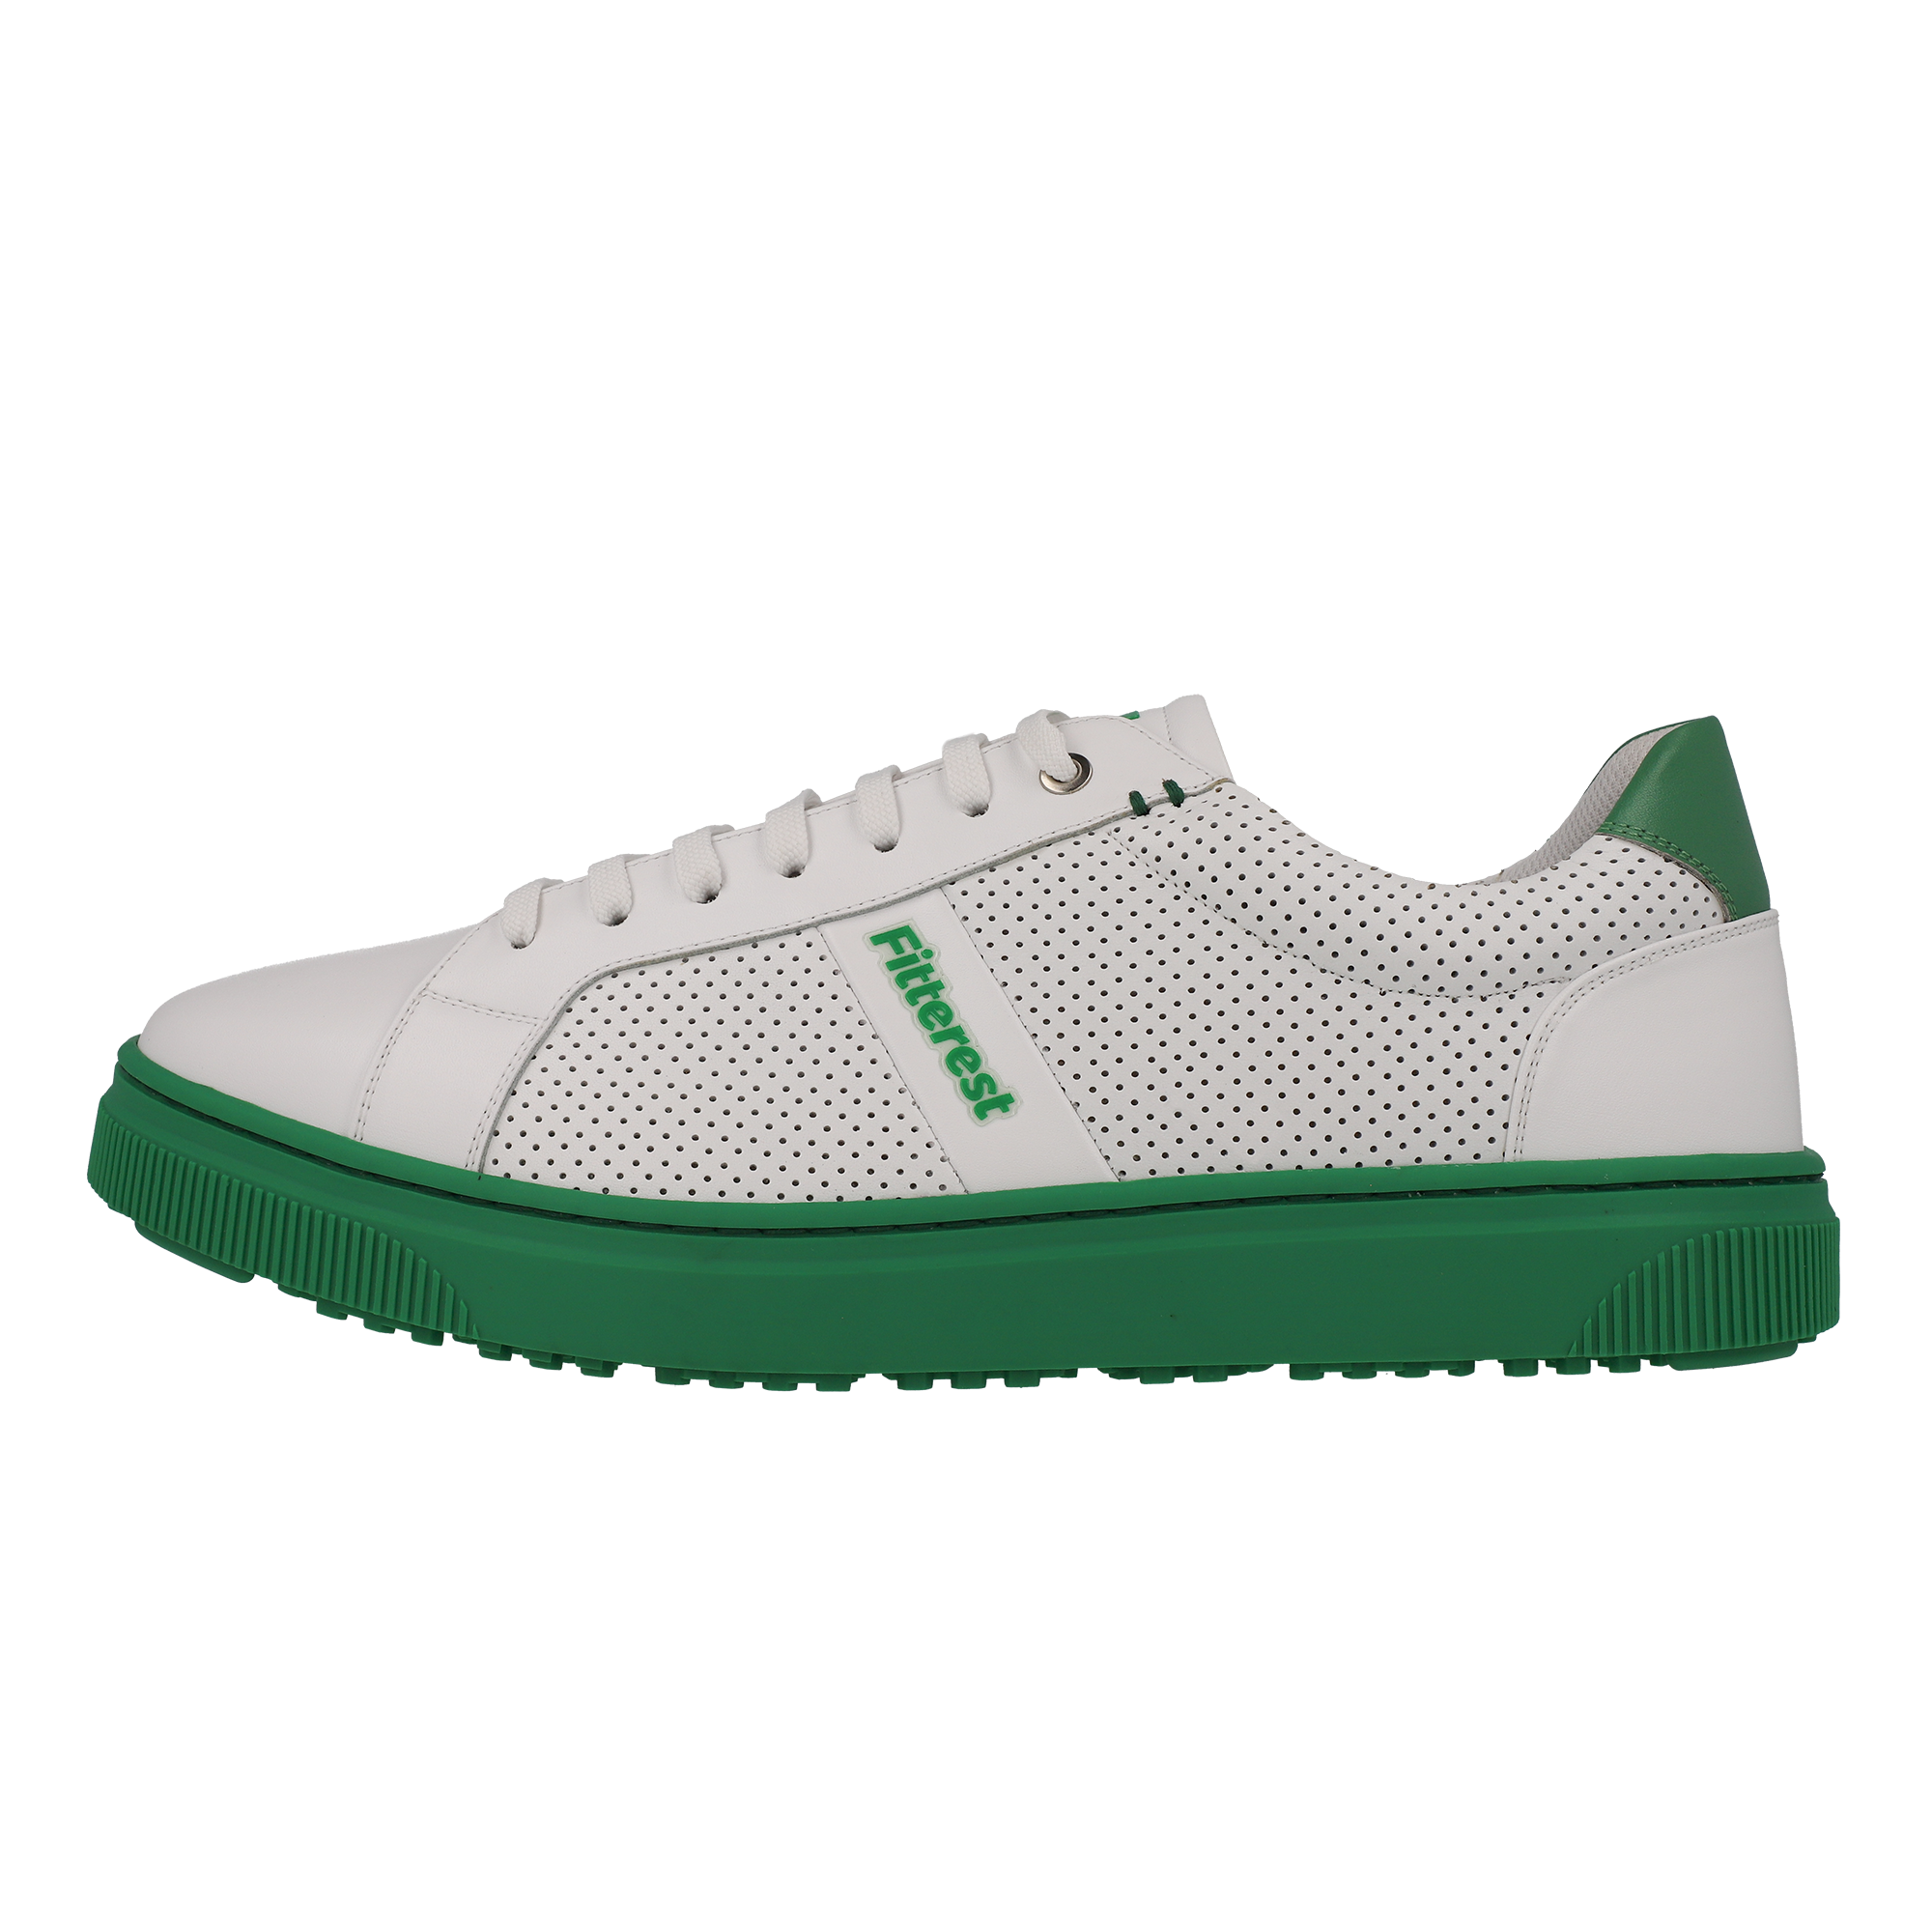 FITTEREST Honeycomb Ground Golf Shoes for Men - FTR24 M406